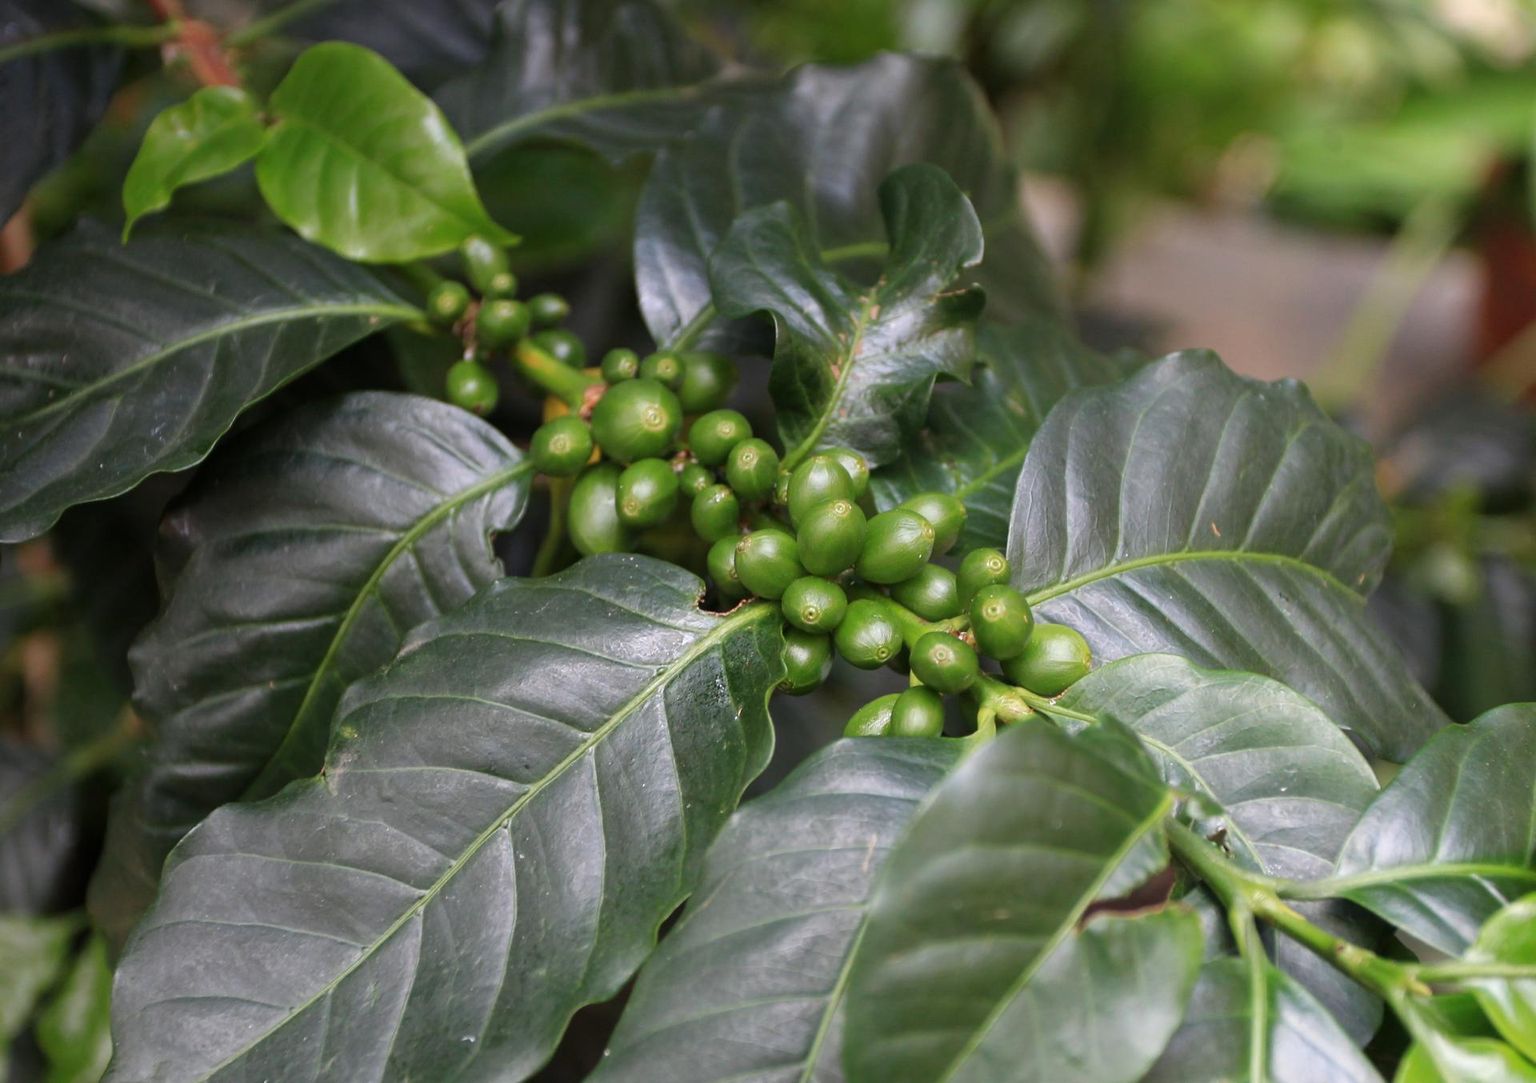 Toas kasvades kohvipuu küll vilju ei kanna või teeb seda väga harva, kuid on siiski huvitav ja igihalja lehestikuga dekoratiivne taim.